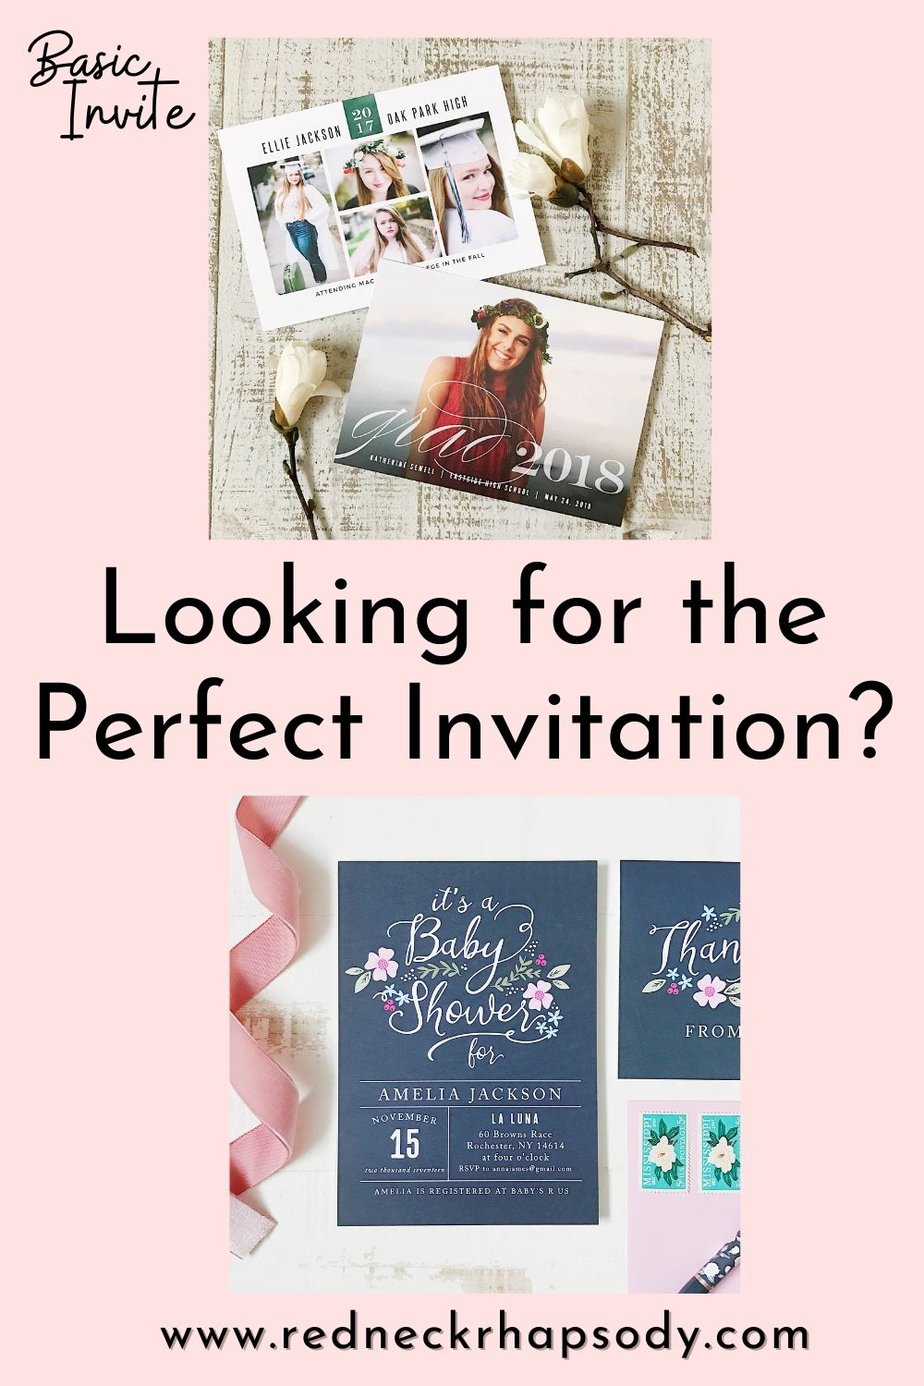 Basic Invite variety of invitations.